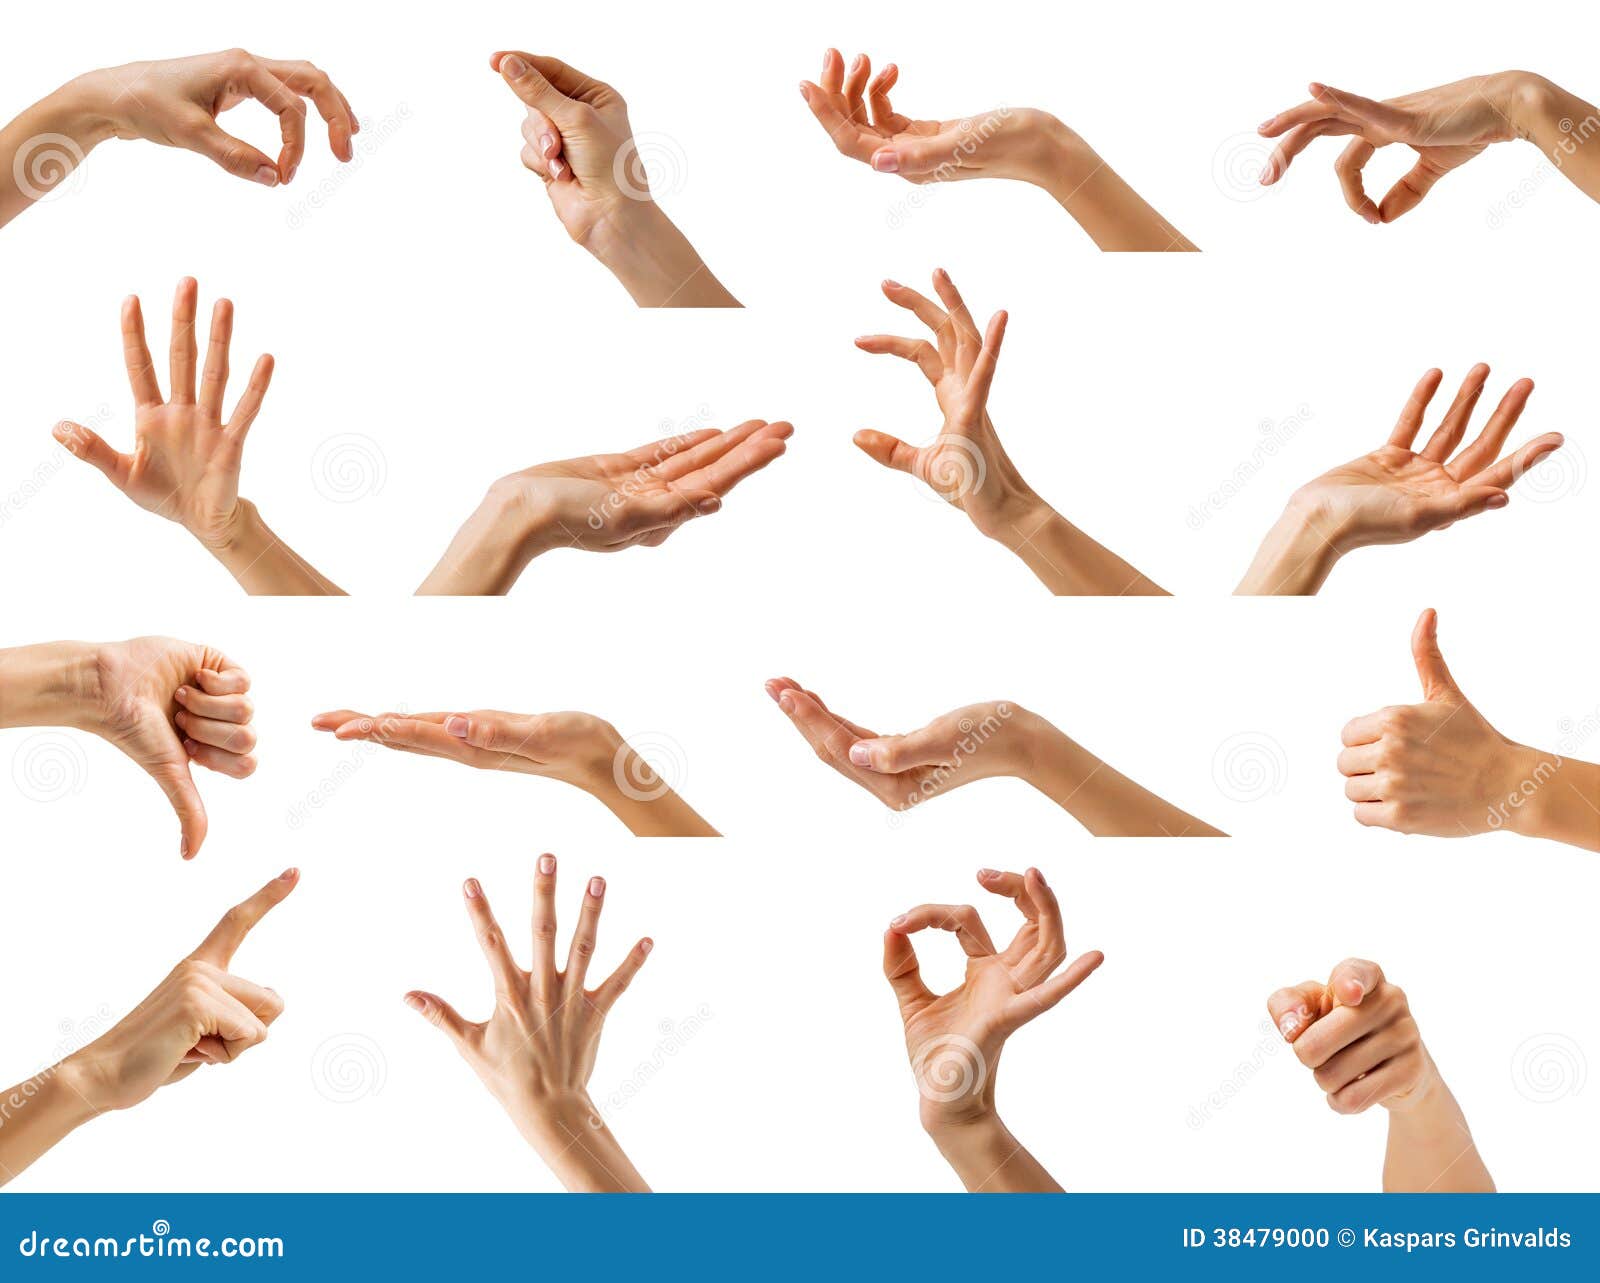 Кидать пальцы. Красивые жесты руками. Жесты кистей рук. Женские руки жесты. Женская кисть руки.